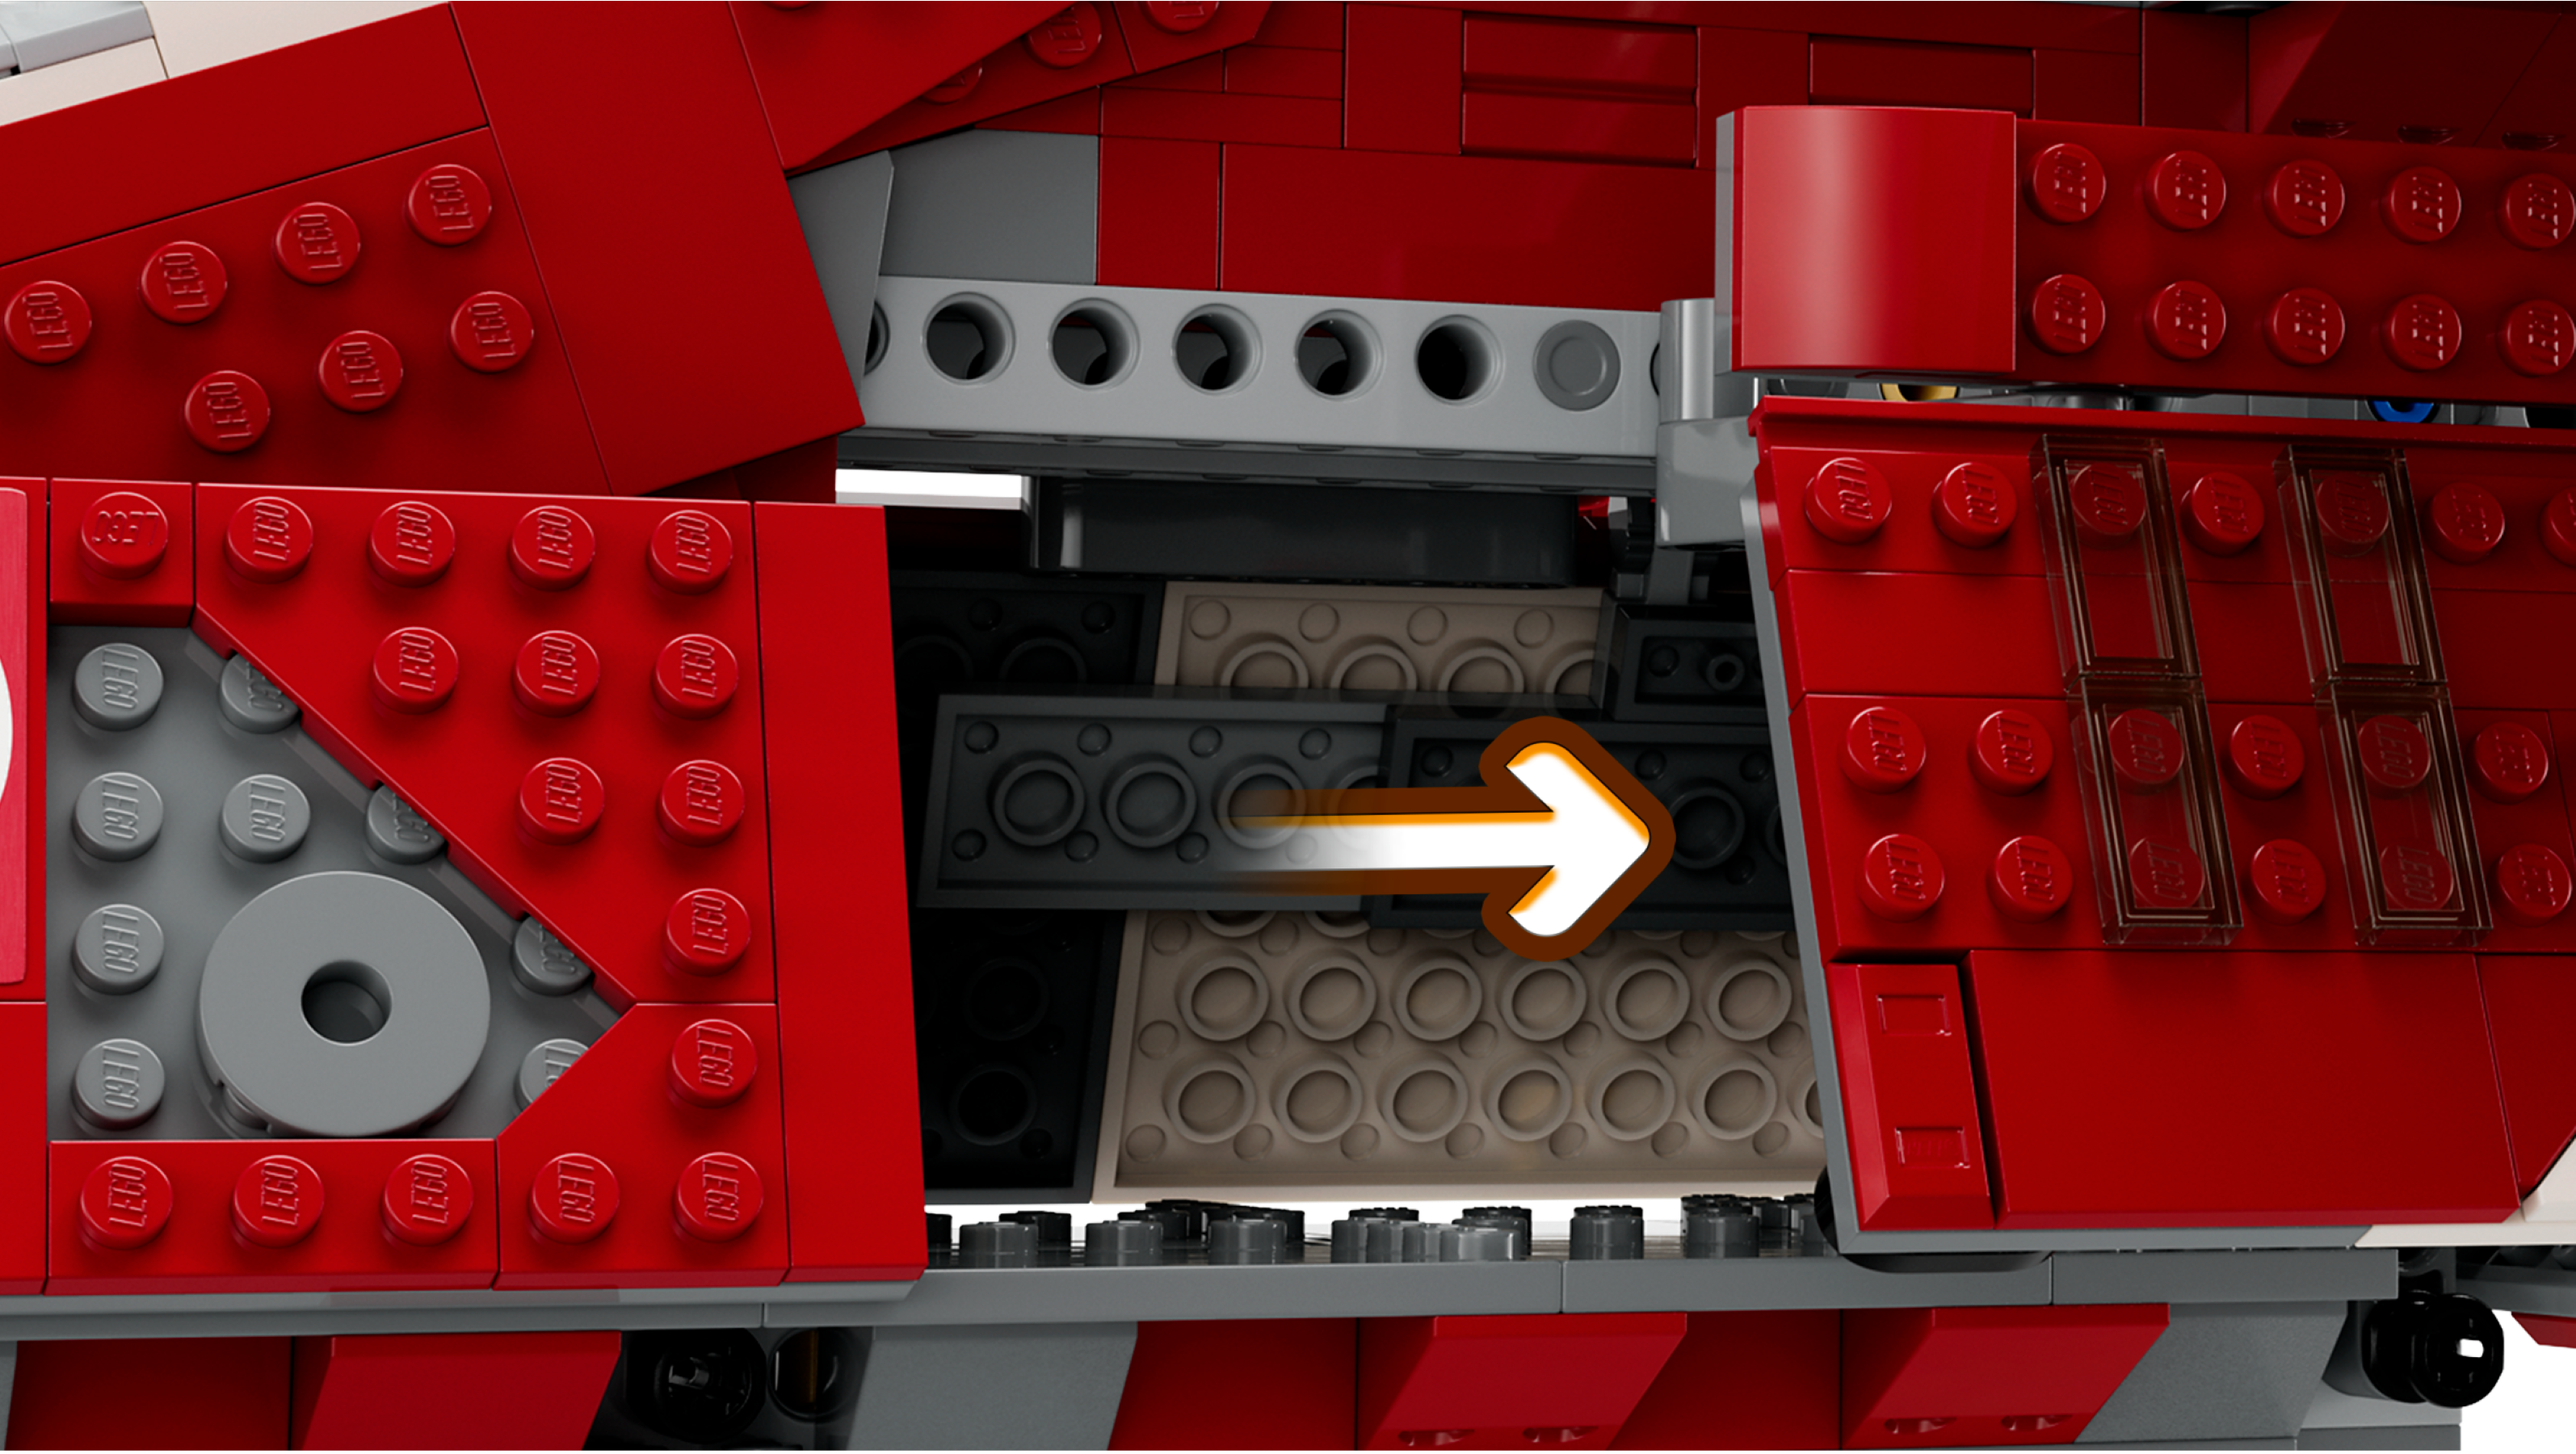 LEGO Star Wars Coruscant Guard Gunship Set 75354 - GB